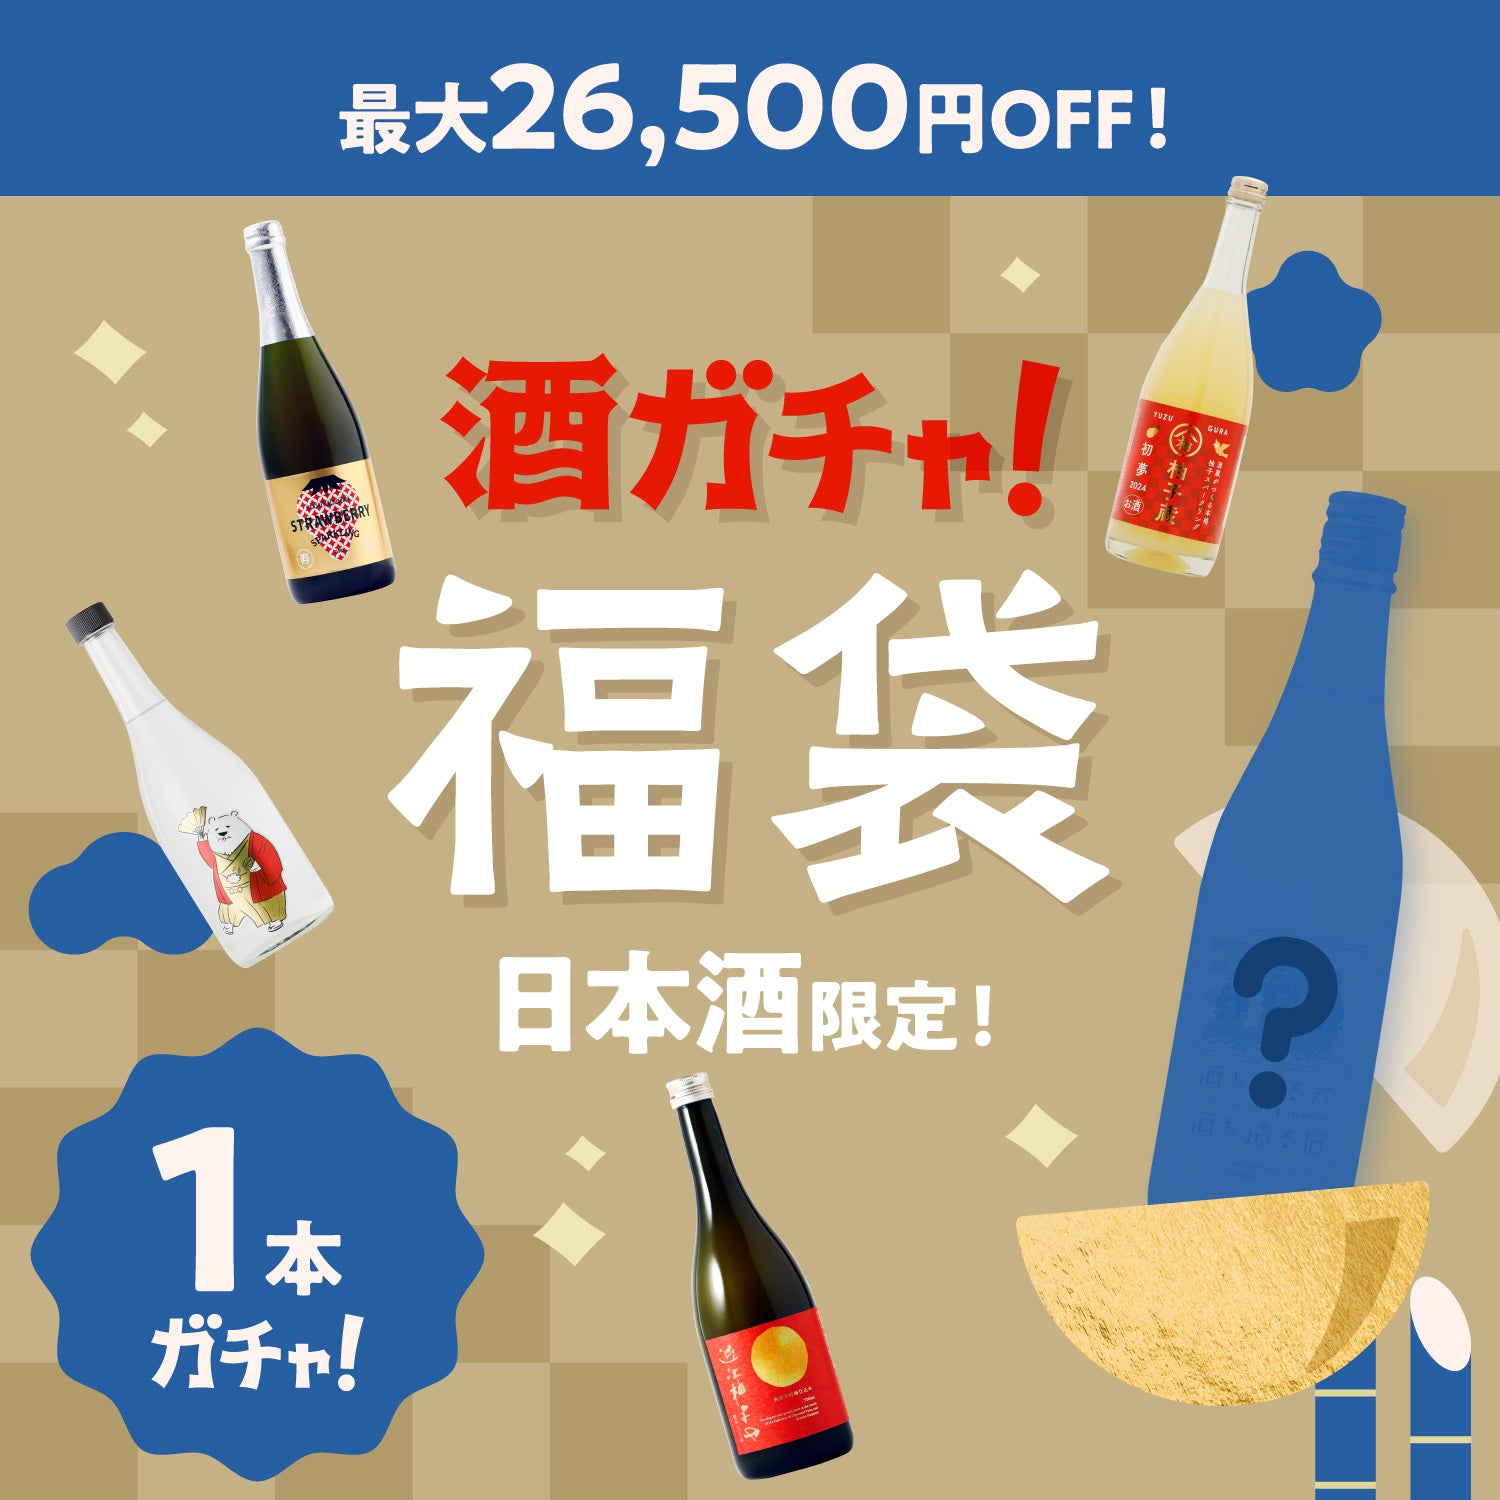 【最大26,500円OFF】1本酒ガチャ福袋-日本酒-